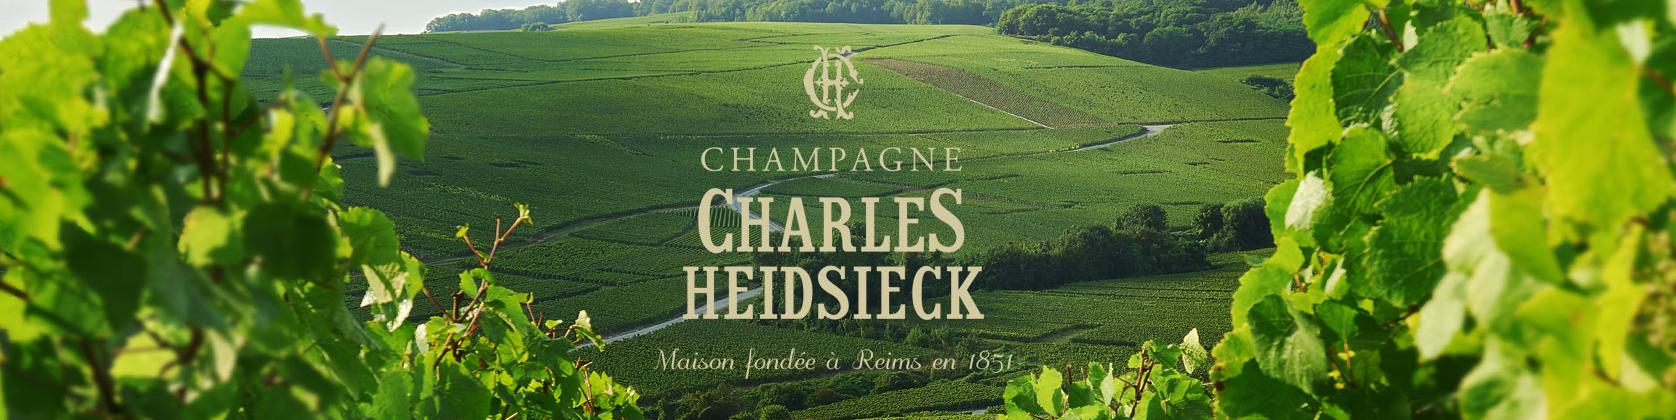 Champagne Charles Heidsieck Weinberge